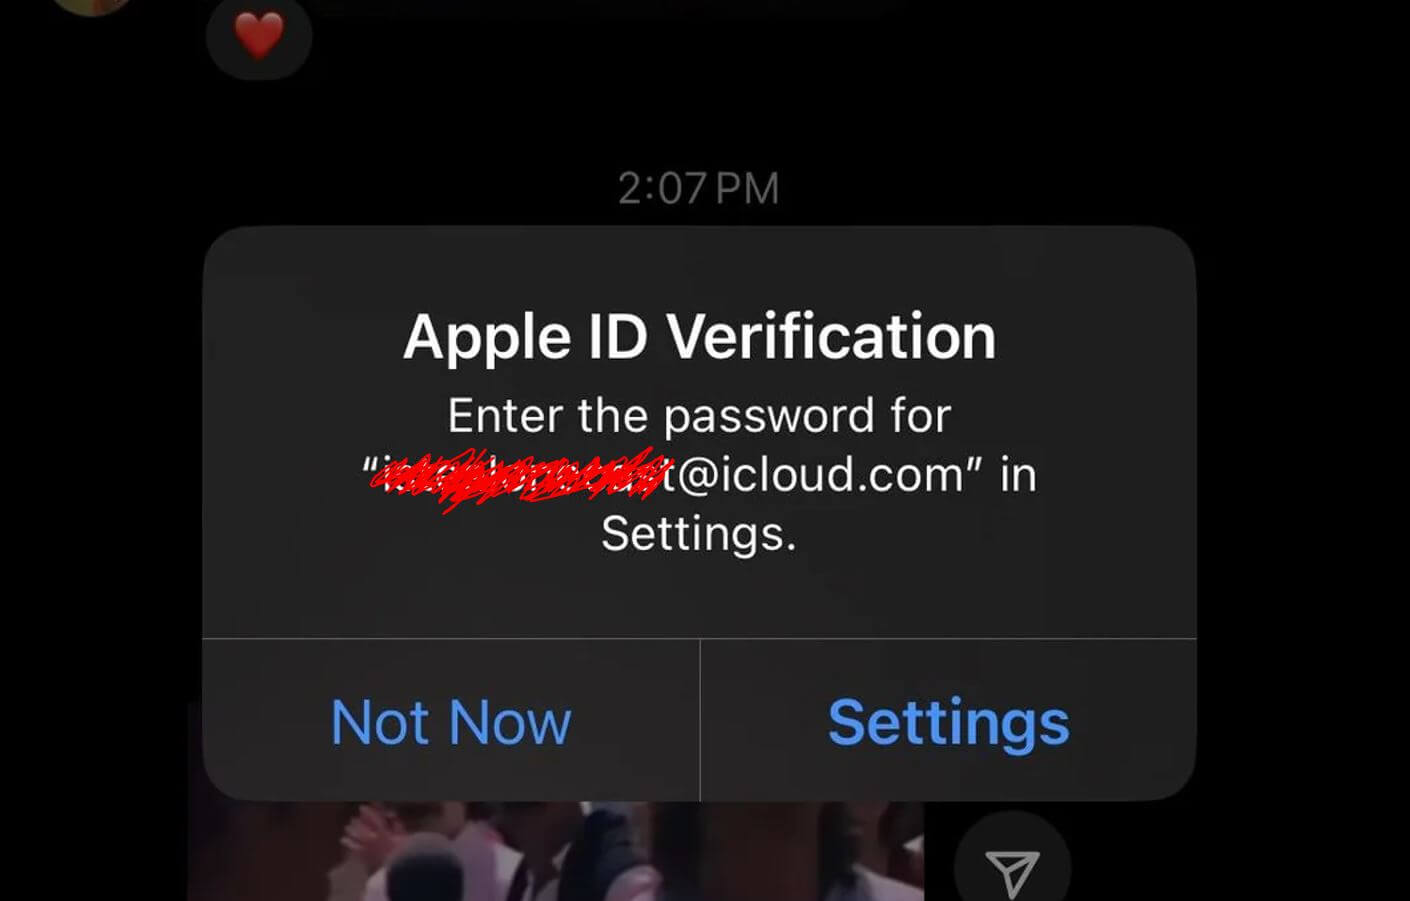 Айфон предлагает ввести пароль от чужого Apple ID. Что делать